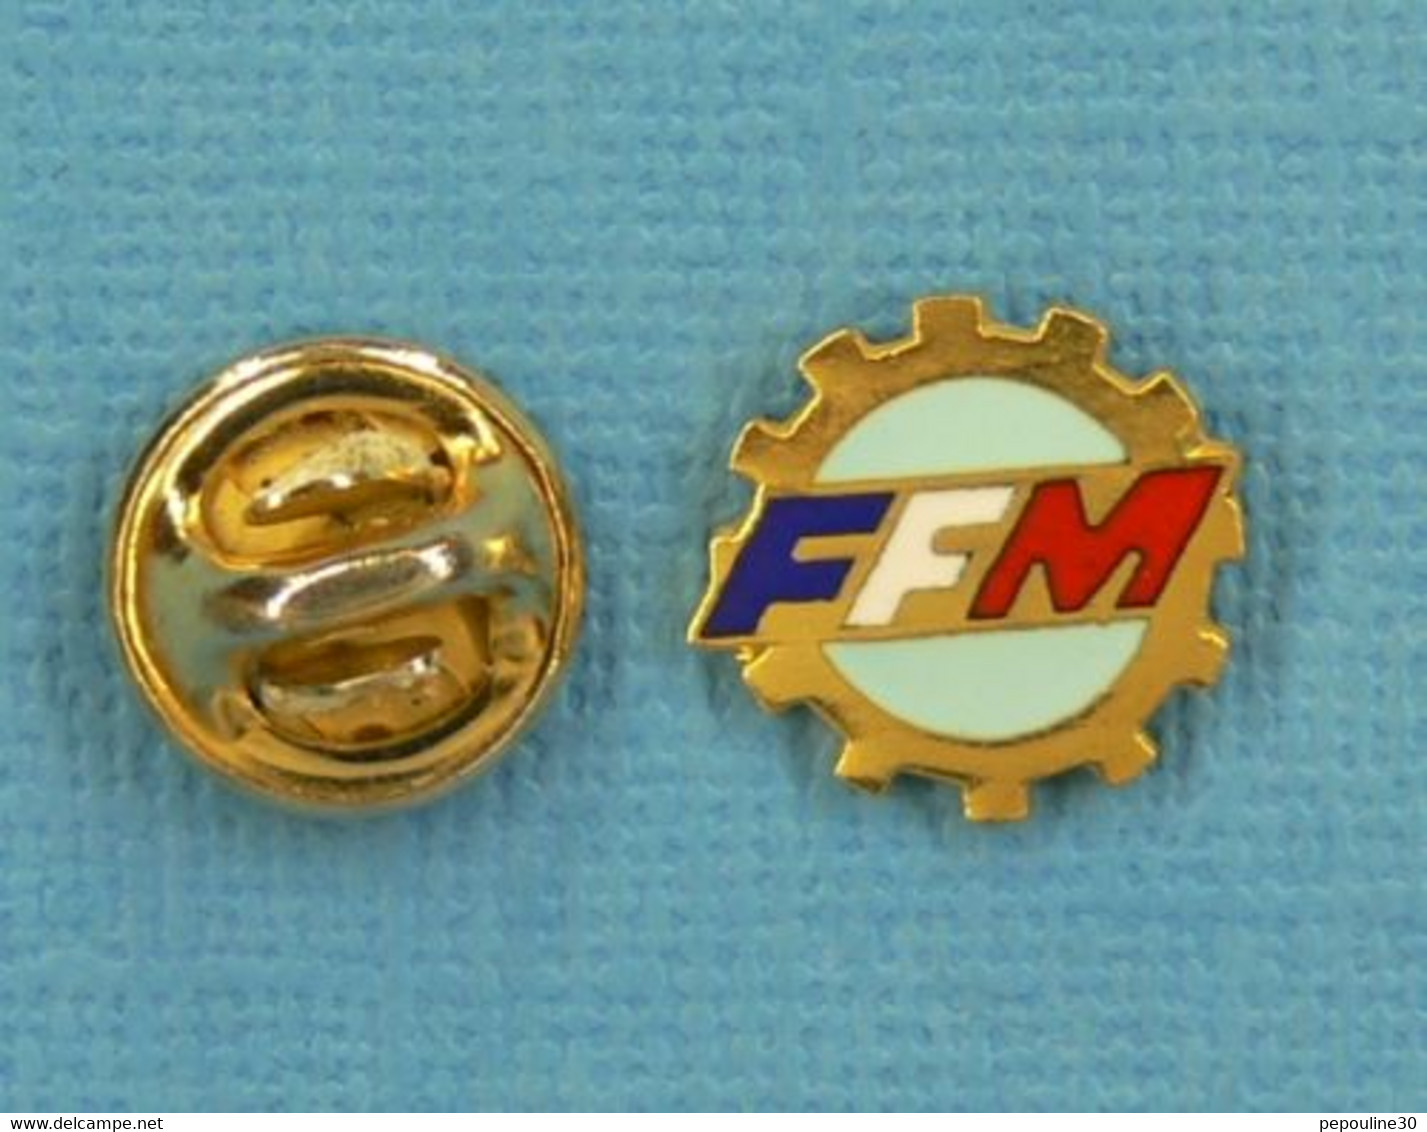 1 PIN'S //  ** FFM / FÉDÉRATION FRANÇAISE DE MOTOCYCLISME ** . (Fraisse) - Motos